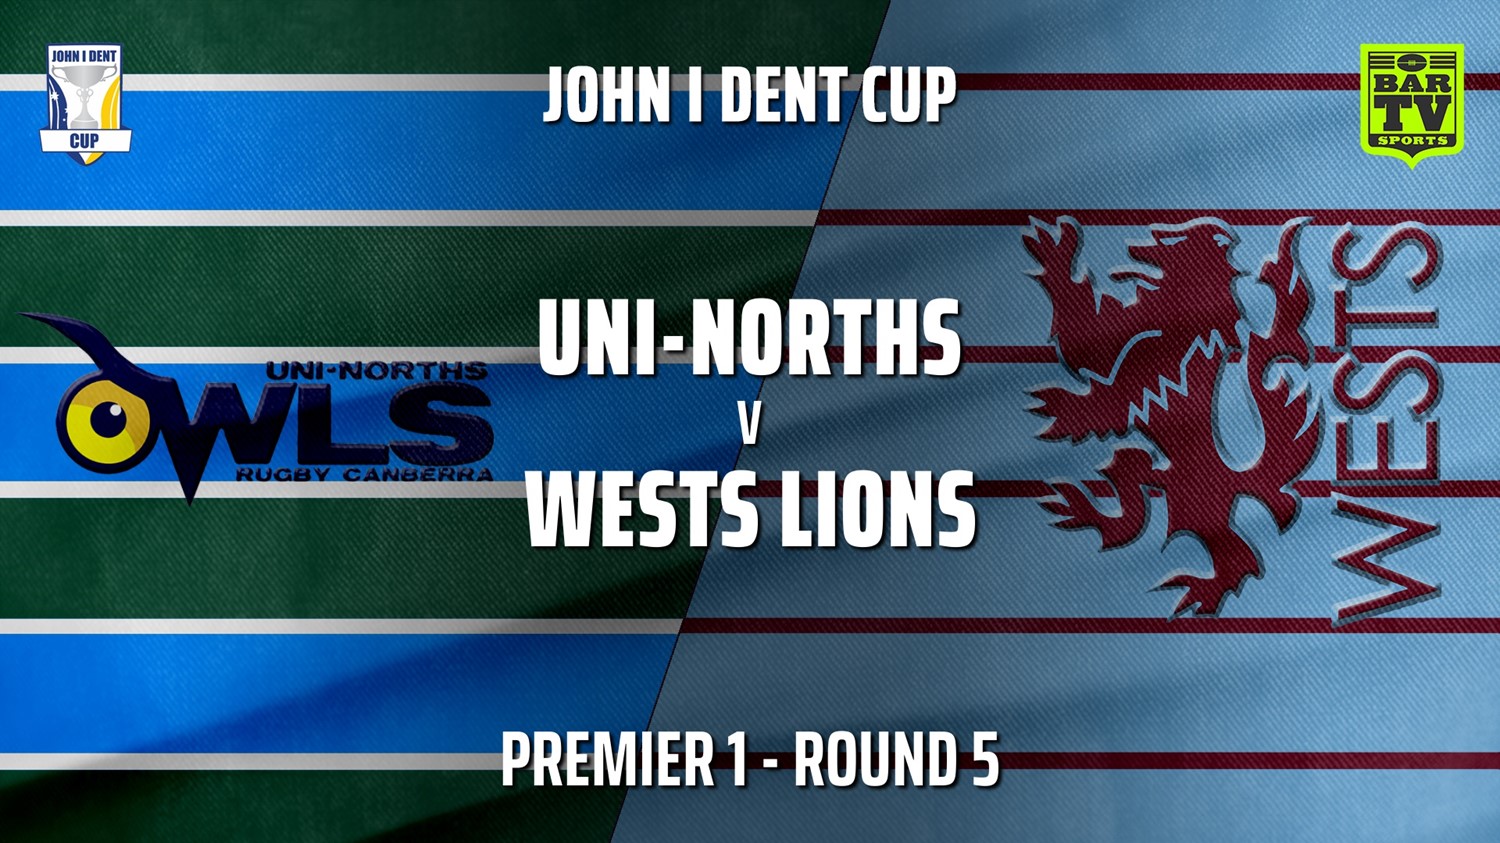 210522-John I Dent Round 5 - Premier 1 - UNI-Norths v Wests Lions Slate Image